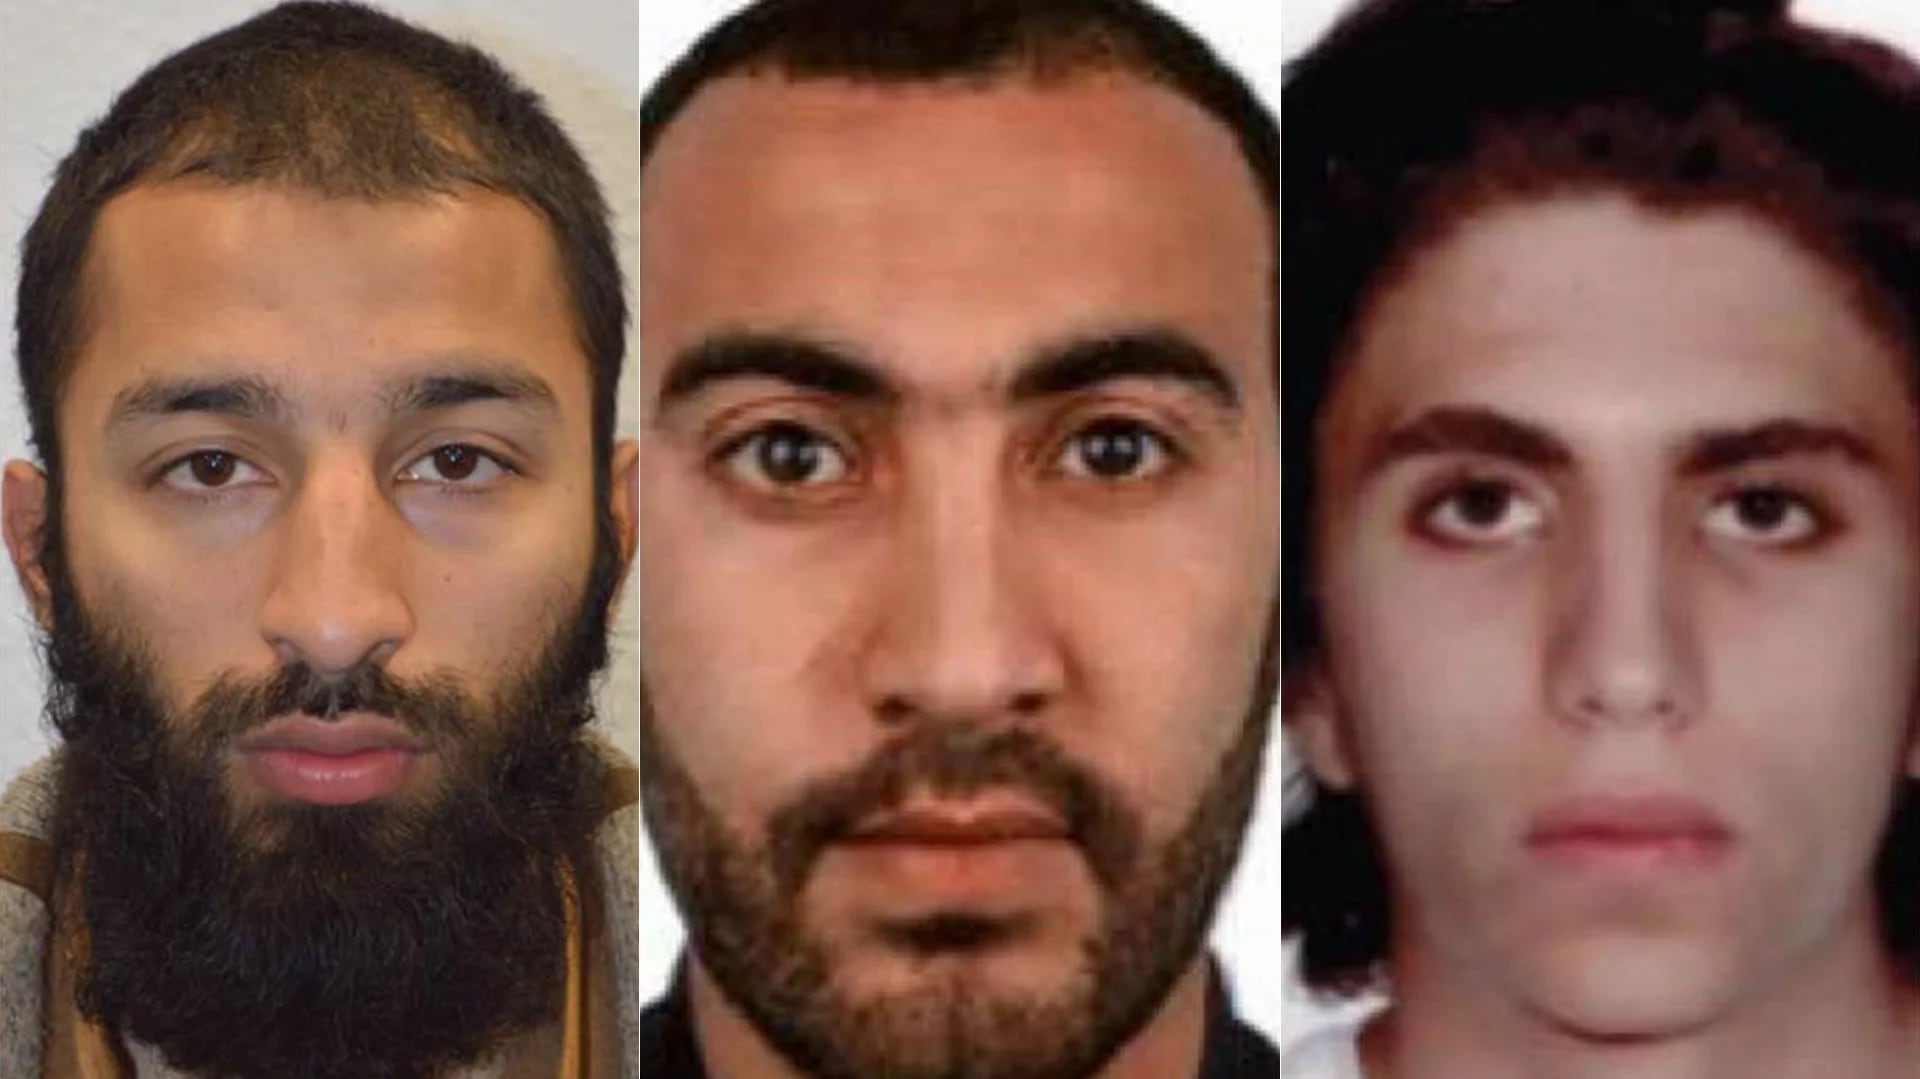 Khuram Butt, Rachid Radouane y Youssef Zaghba, los tres terroristas identificados por el atentado en Londres